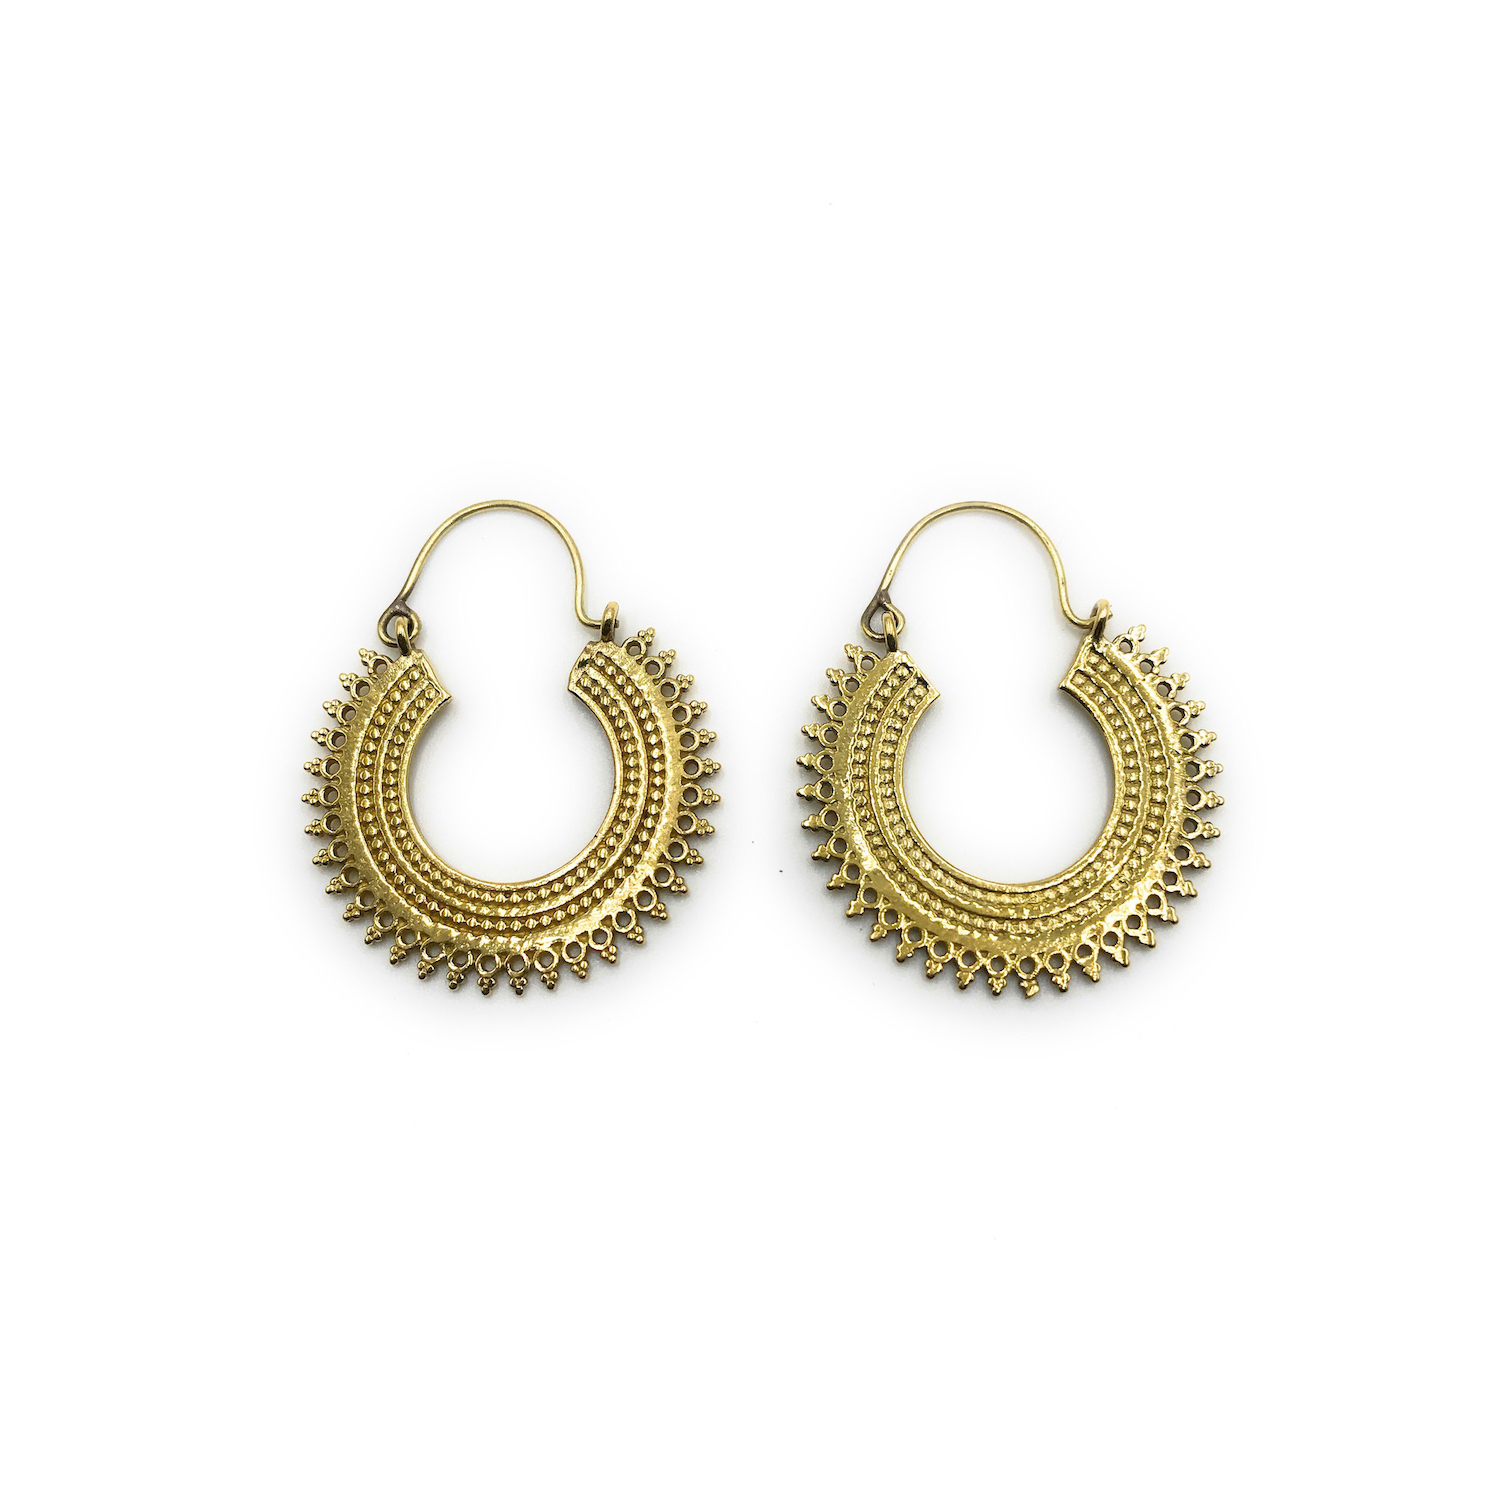 Mother Gift Brass Triangle Earrings,Tribal Brass Earrings,Gypsy Earrings,Boho Earrings,Geometric Earrings,Statement Earrings